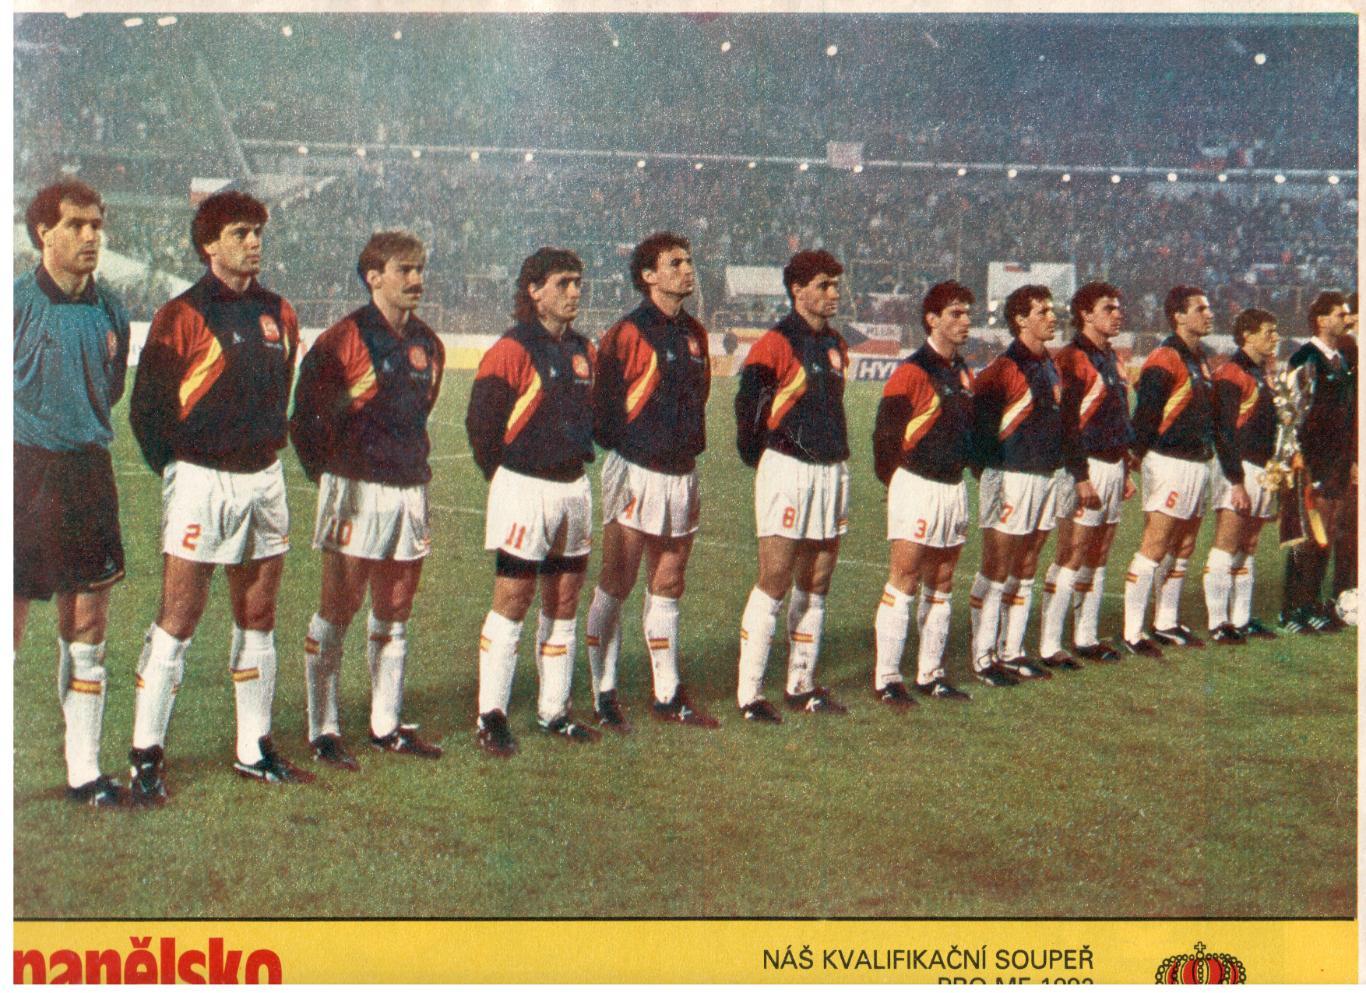 Участники чемпионата Европы 1992. Испания